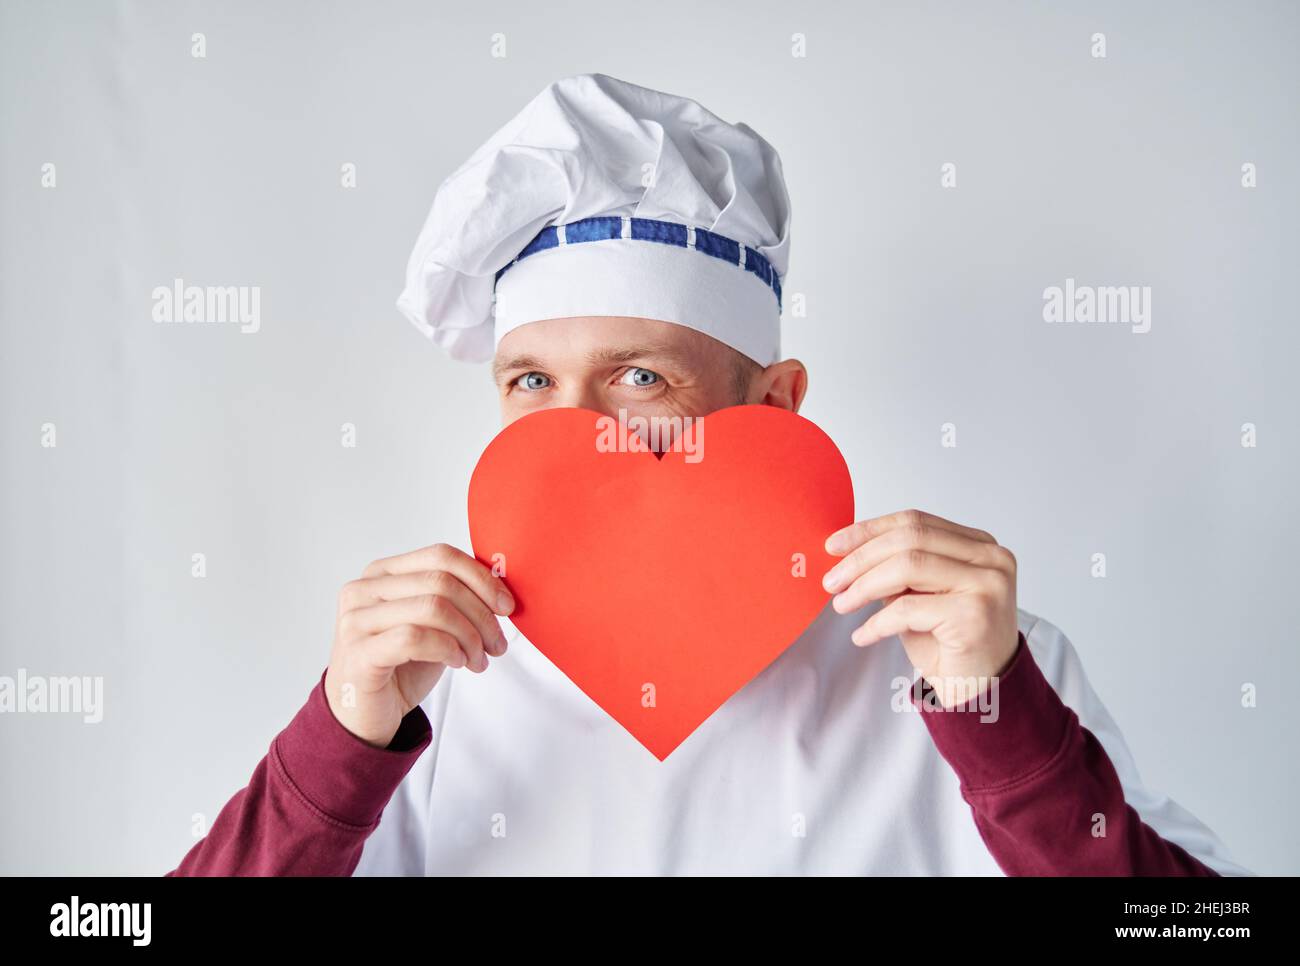 Saint-Valentin : cuisinier ou boulanger à barbe en uniforme blanc avec cœur en papier rouge.Chef cuisinier tenant un coeur rouge devant le vêtement de travail.Concept d'amour ou de relation Banque D'Images